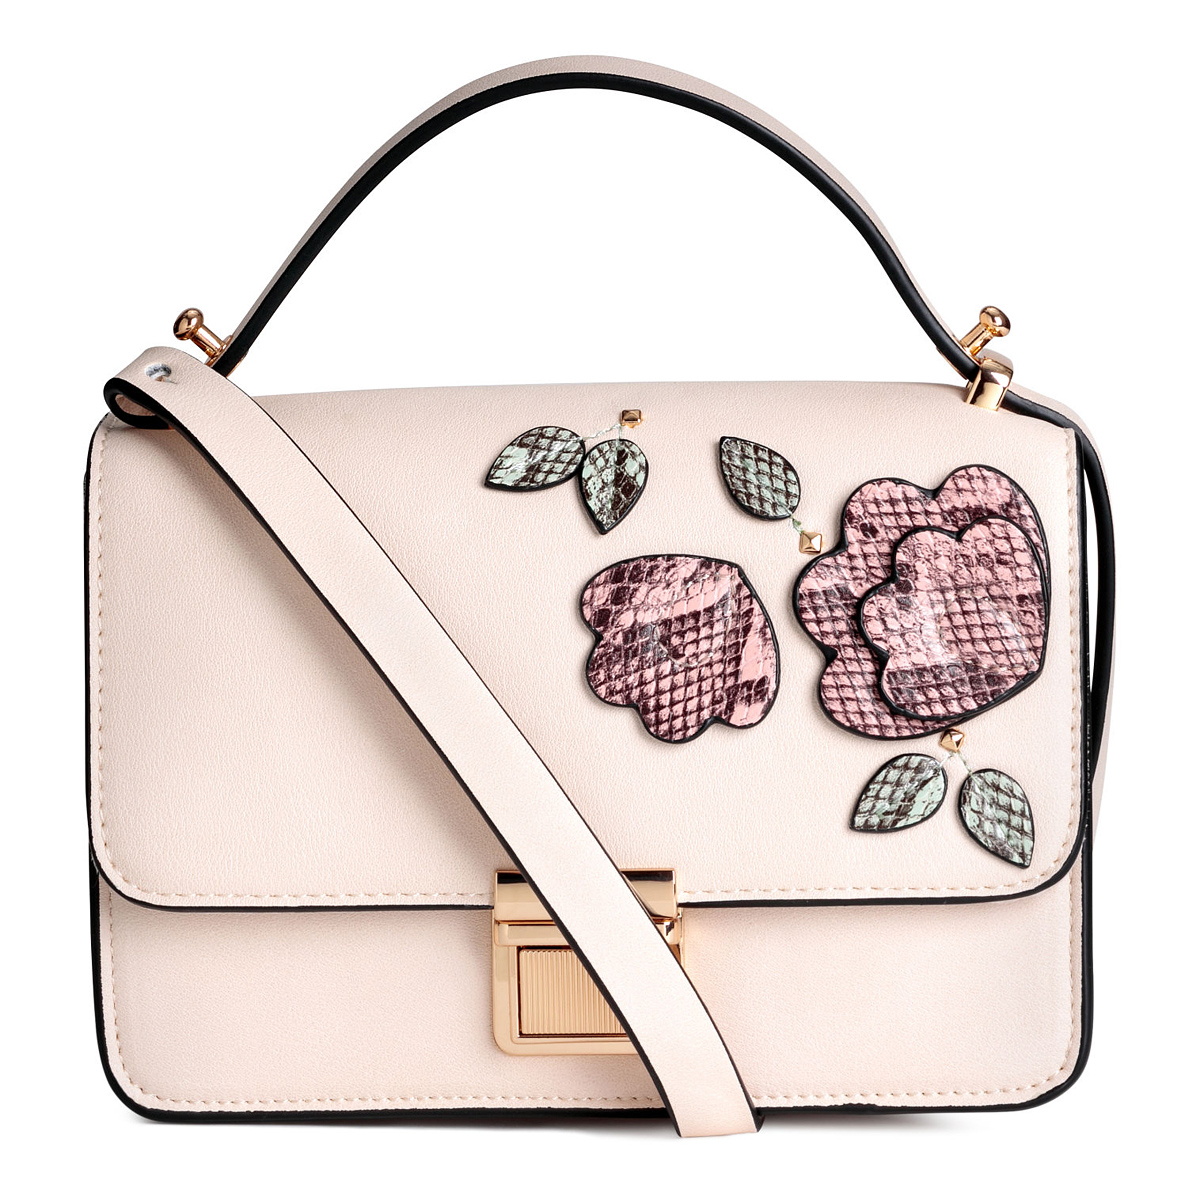 A romantikus púderrózsaszín, virágos táskák sem sziruposak, ha nem lőnek túl a célon. A H&M darabja 8990 forintba kerül.